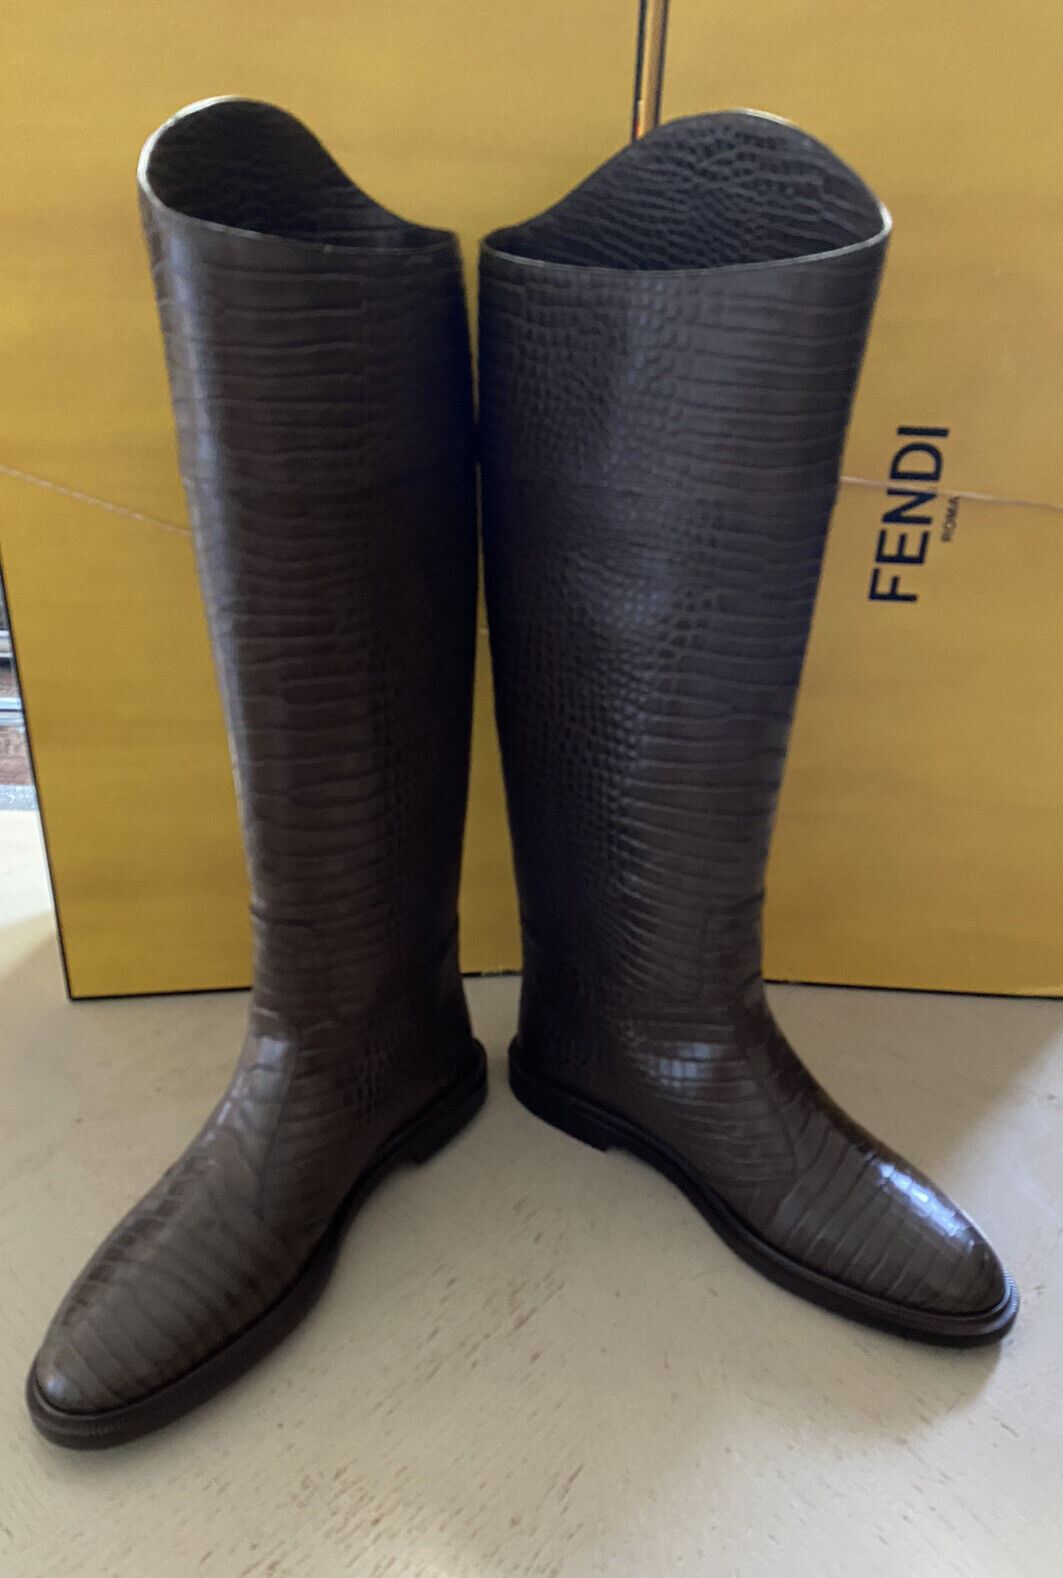 NIB $1590 Fendi Женские кожаные ботинки с тиснением под крокодила Обувь Цвет Maya 10/40 EU